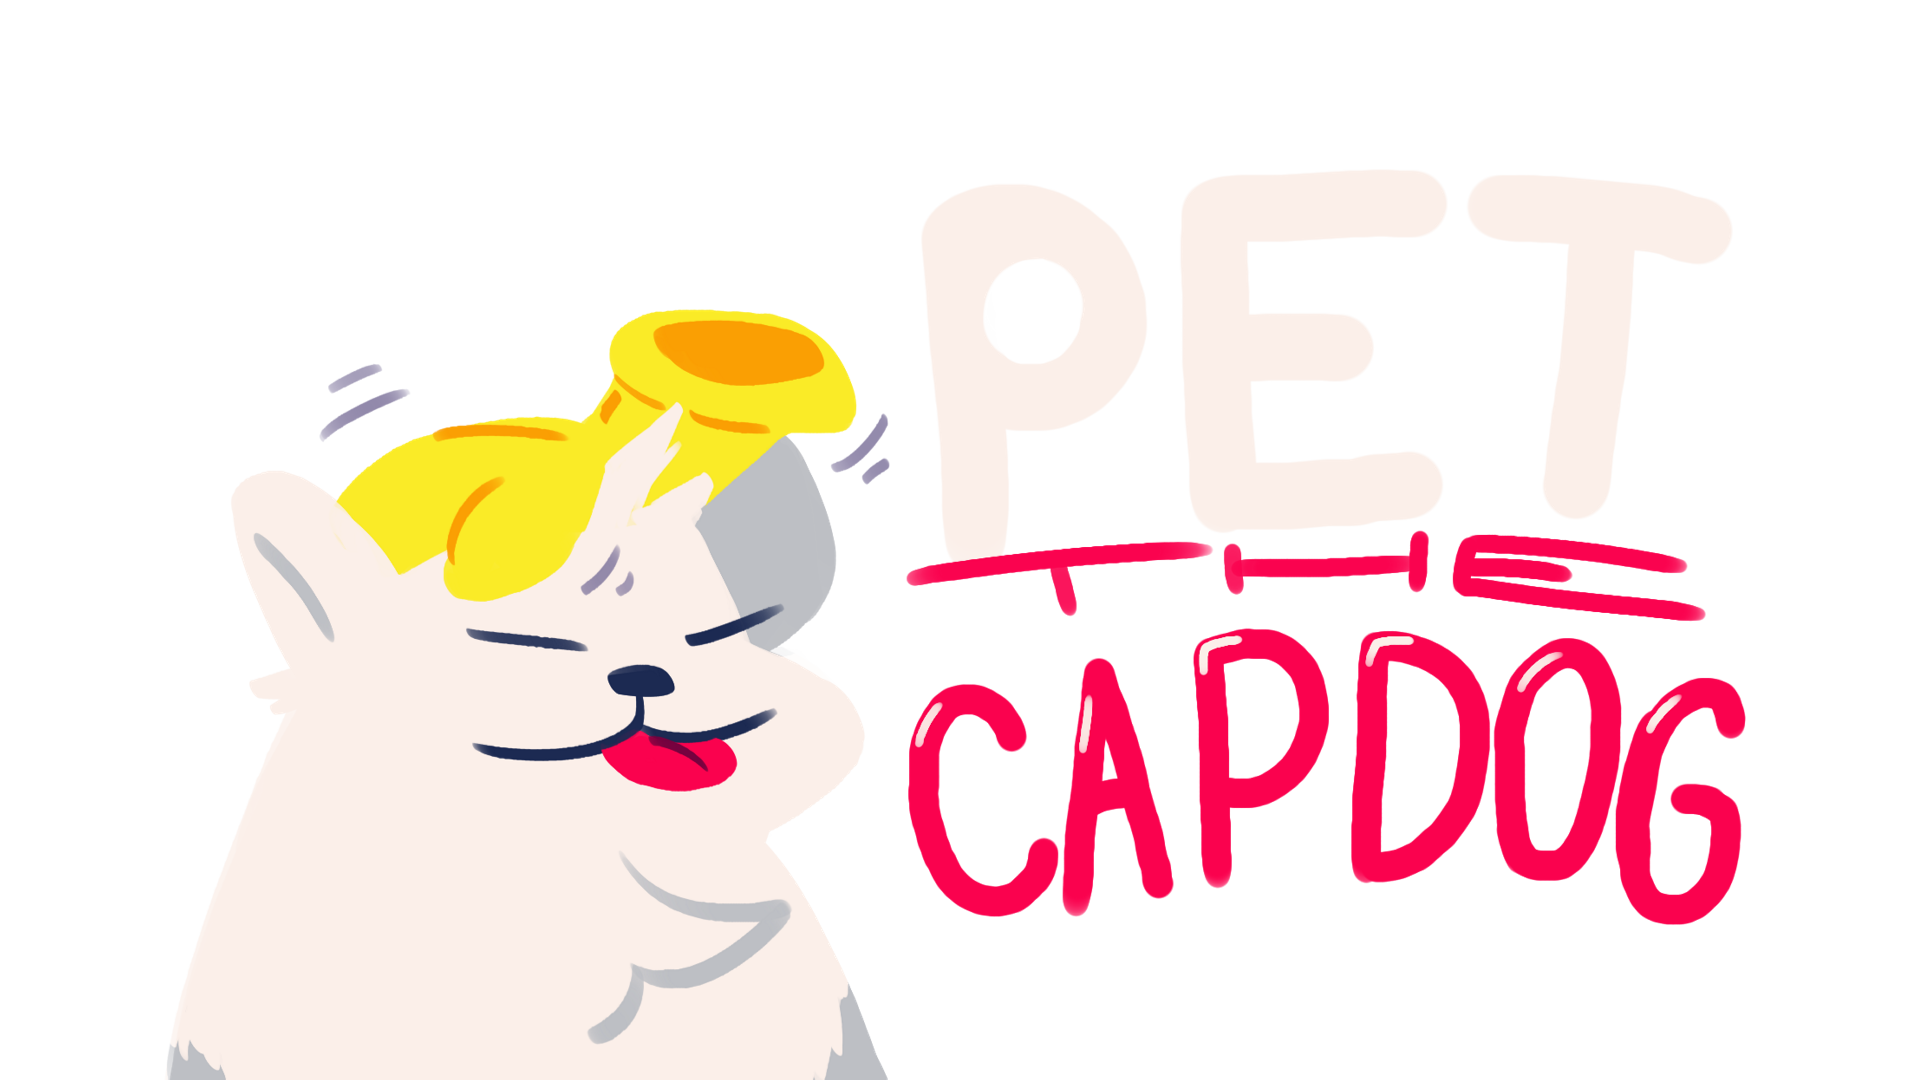 Pet the capdog!